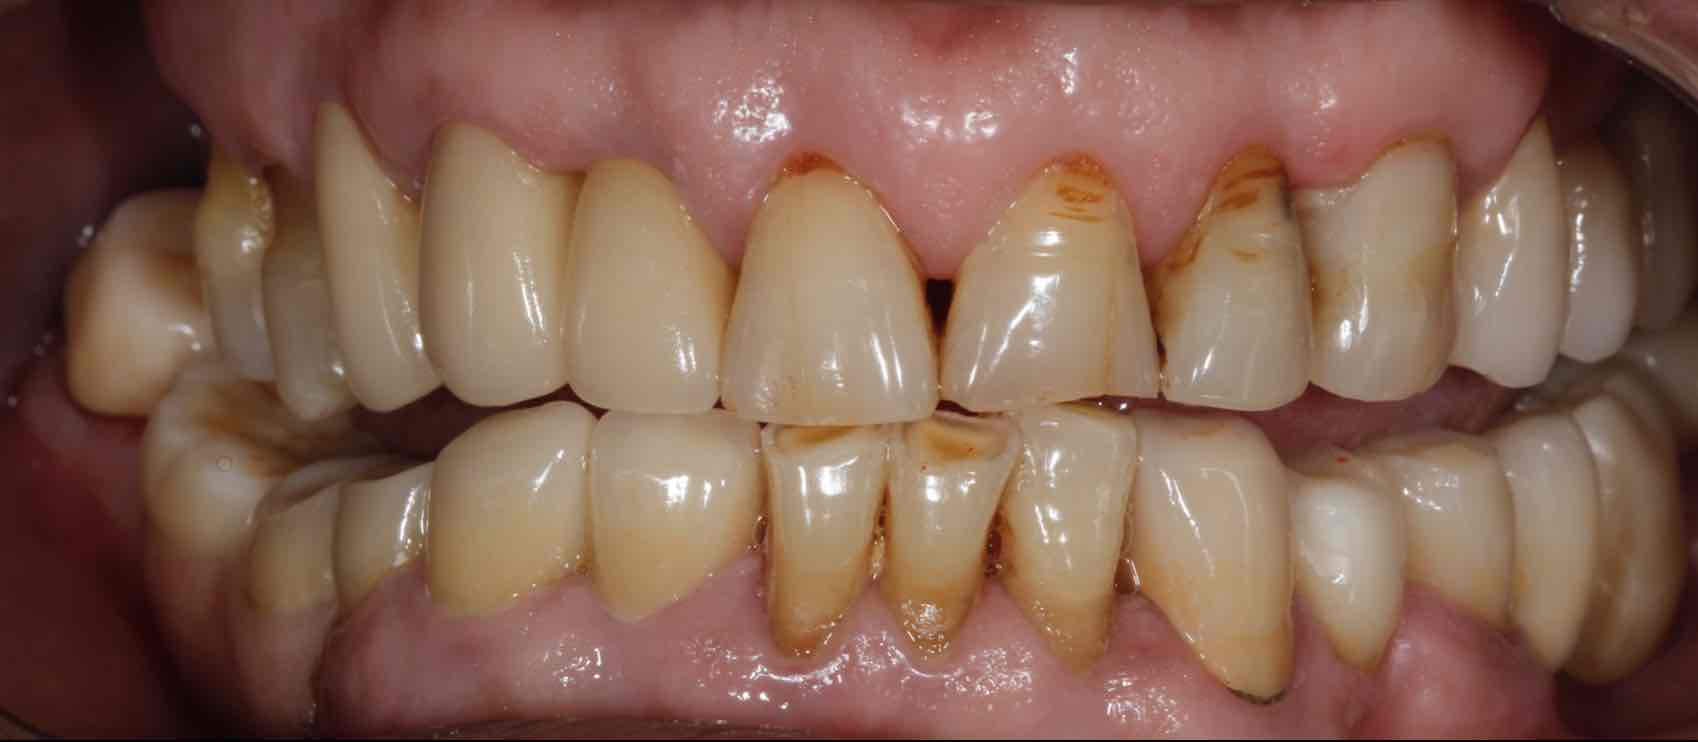 精密附着体修复失败牙槽骨严重萎缩再修复案例